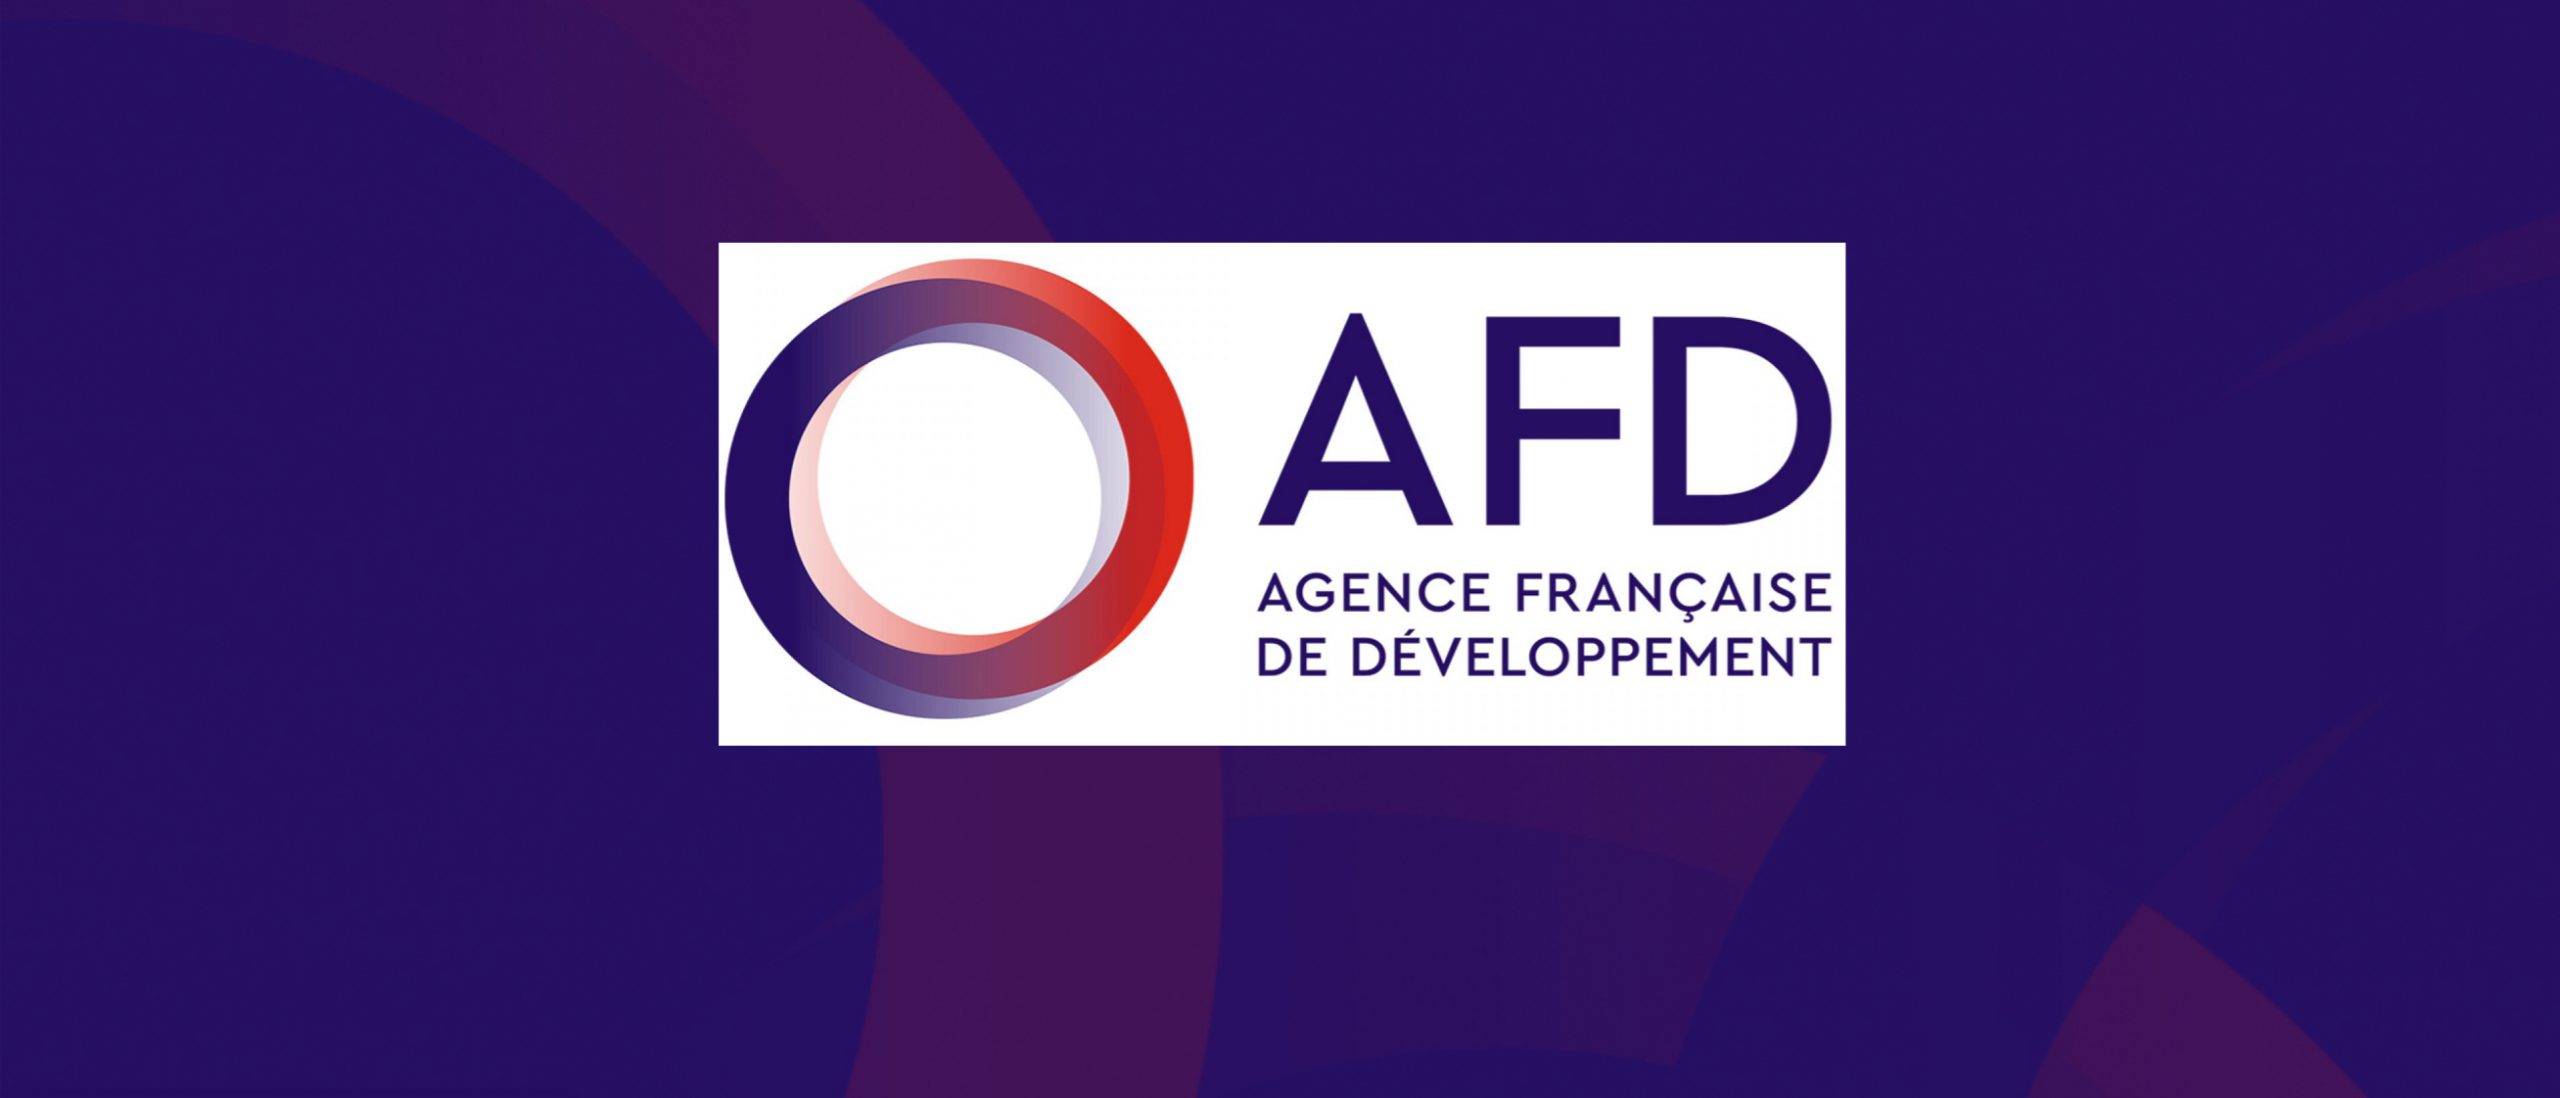 Covid-19 : la France soutient le Bénin avec 2 milliards FCFA